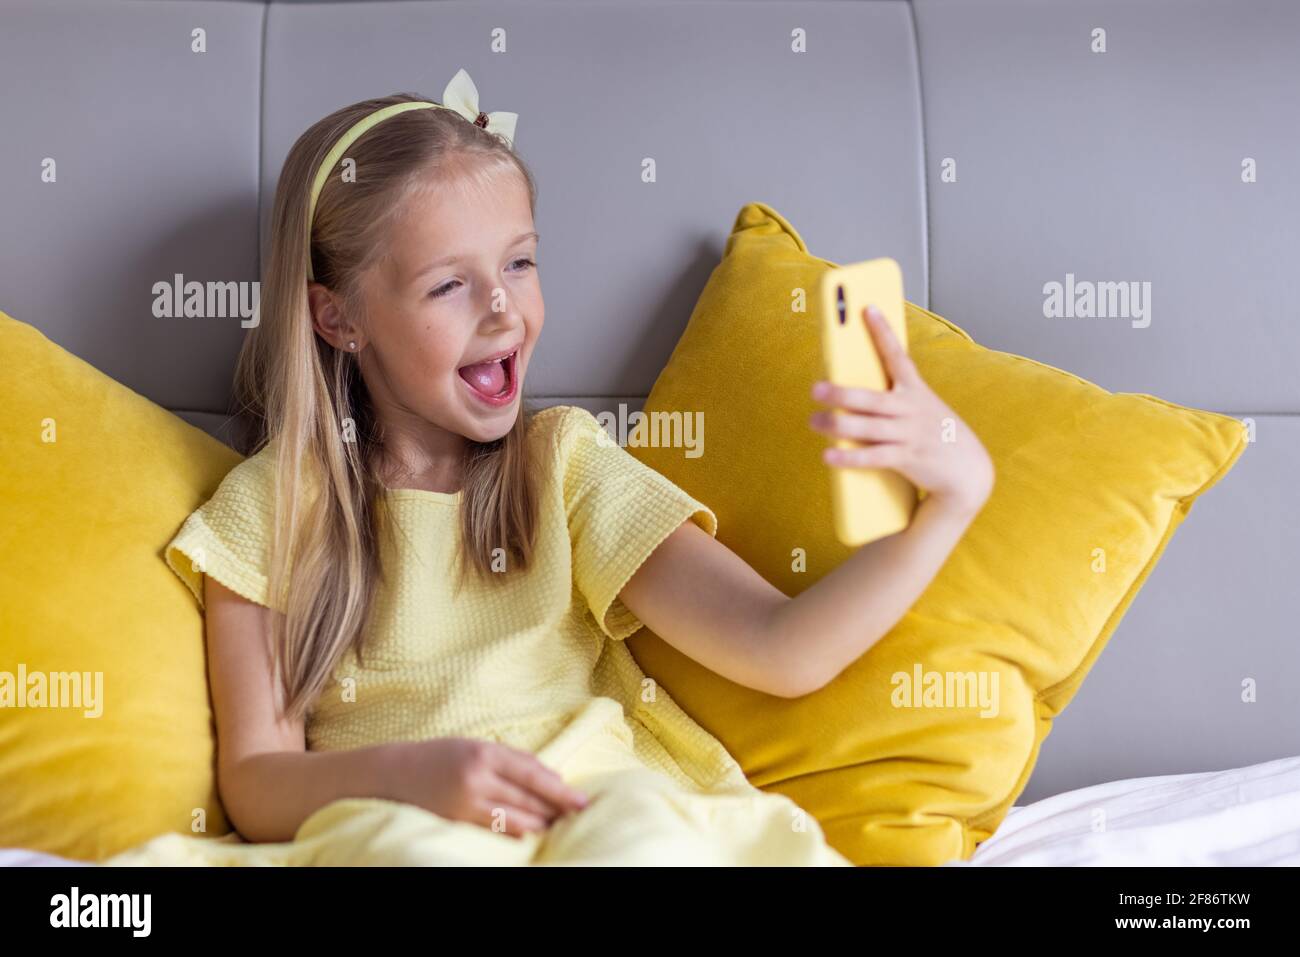 Jolie petite fille de race blanche avec cheveux blonds dans une robe  tendance couleur jaune illuminée assise à la maison pendant la quarantaine  pandémique du coronavirus et Photo Stock - Alamy